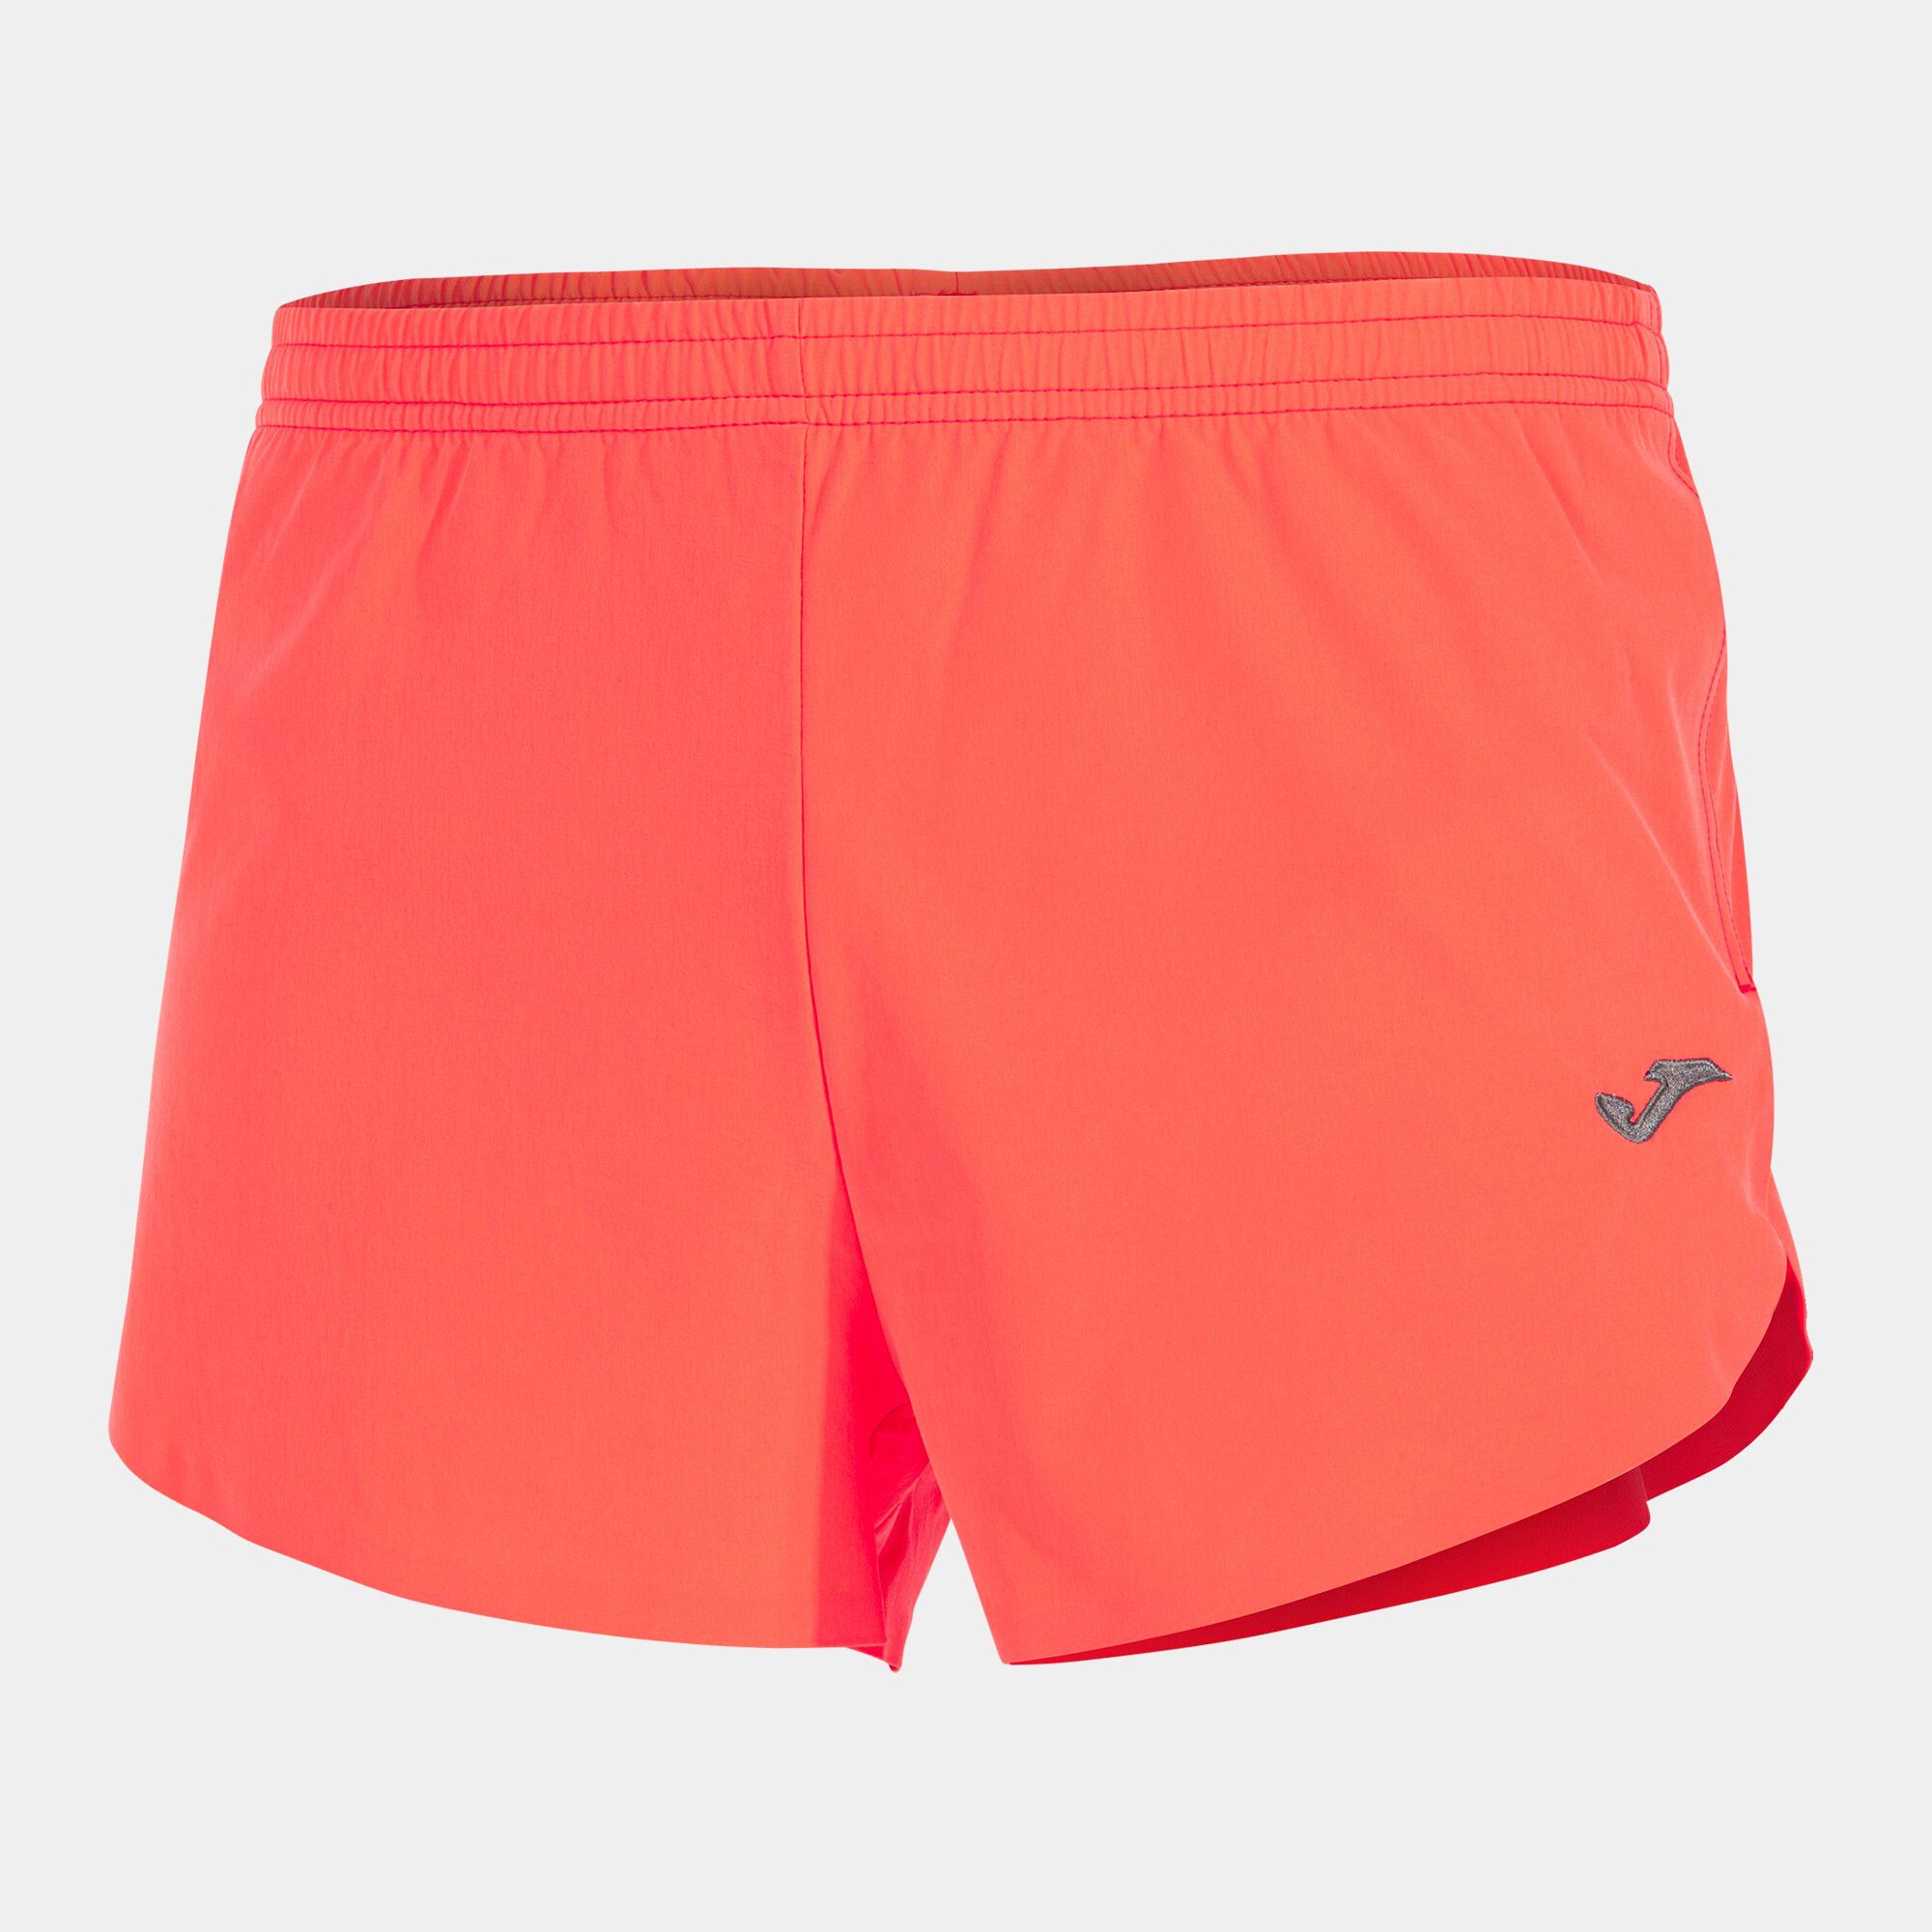 Pantaloncini uomo Olimpia corallo fluorescente